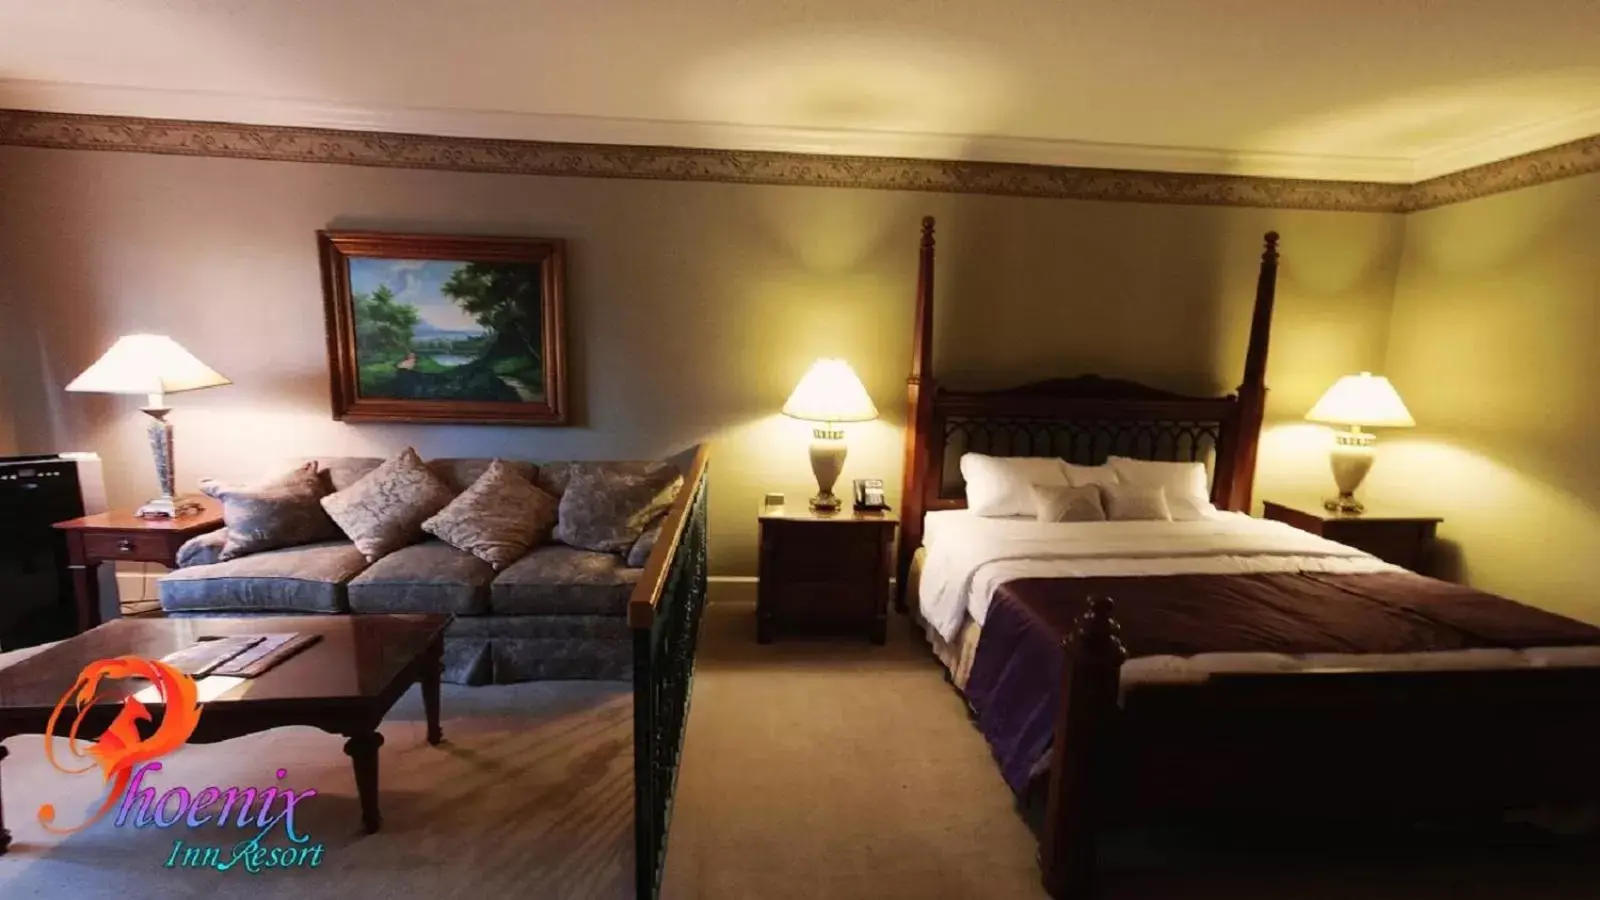 Bedroom, Bed in Phoenix Inn Resort